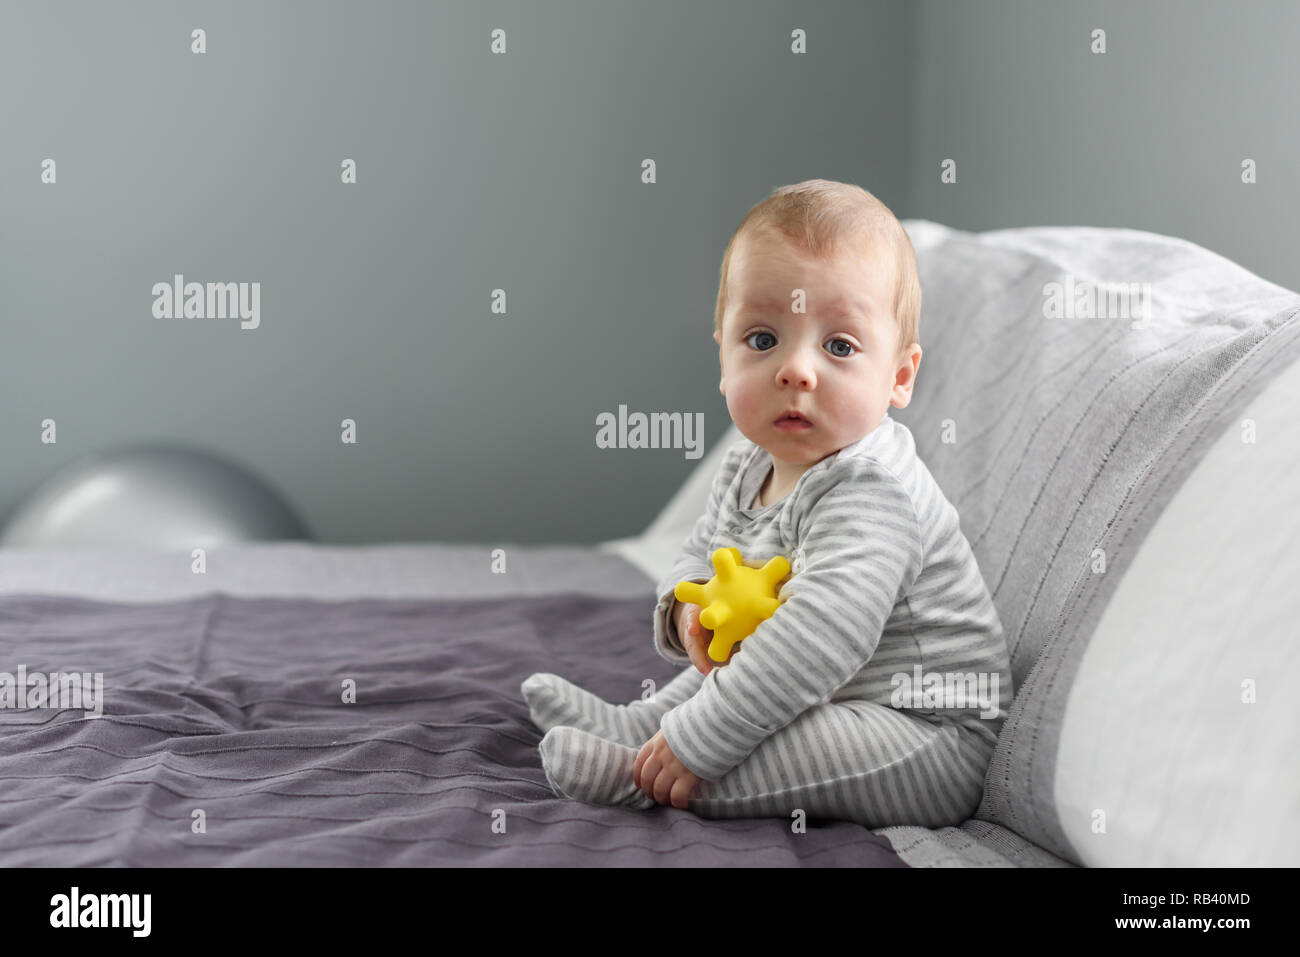 Bébé garçon assis sur tapis gris avec balle jaune jouet. La maternité et nouveau concept de vie Banque D'Images